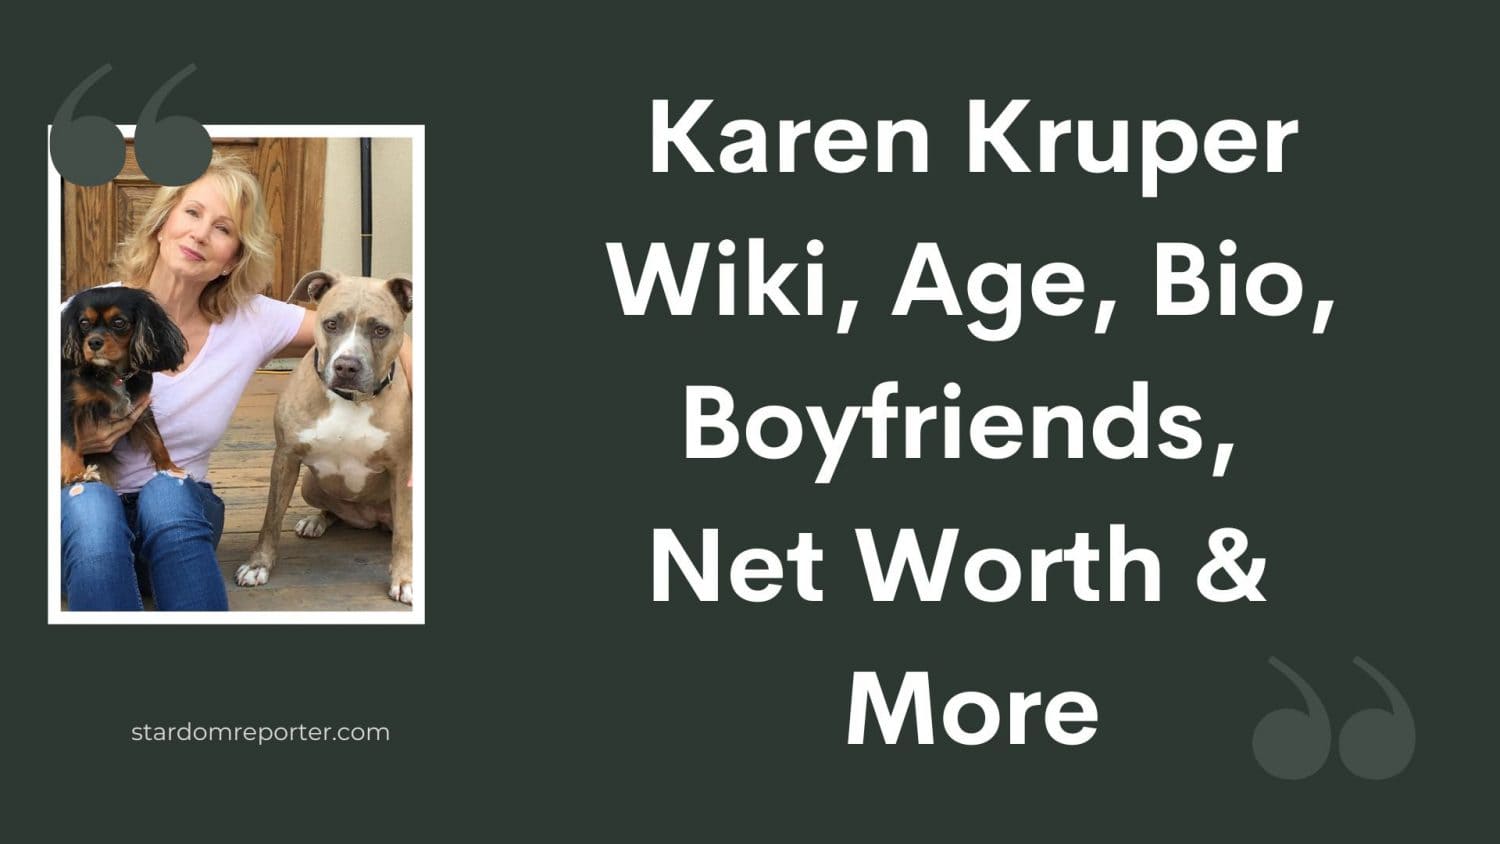 Karen Kruper Wiki, Age, Bio, Boyfriends, Net Worth & More - 27